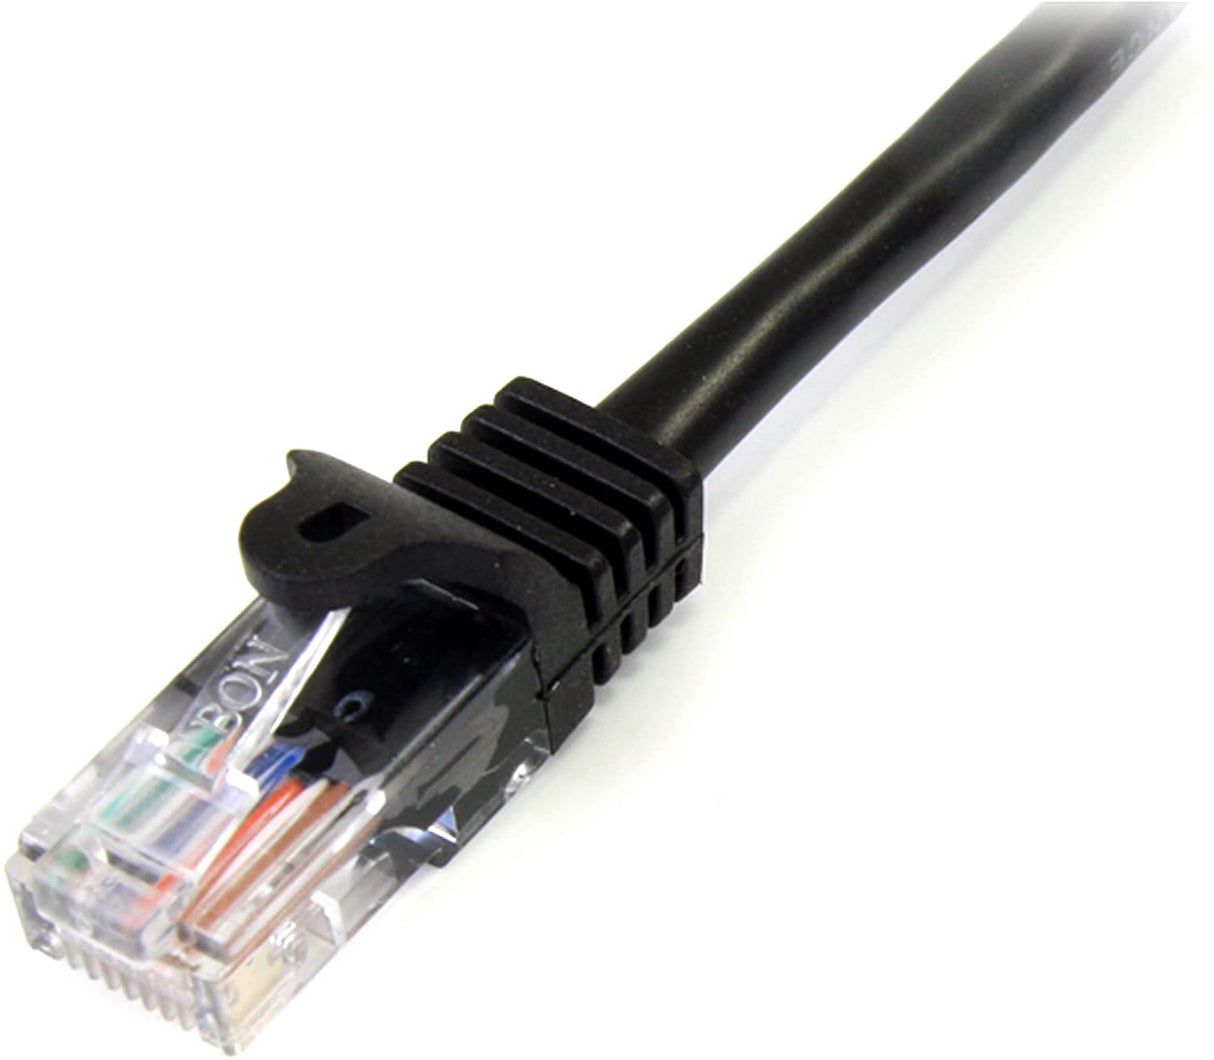 StarTech.com Cat5e Patch Cable with Snagless RJ45 Connectors - 10 ft - M/M - Black (45PATCH10BK) 10 ft / 3m Black